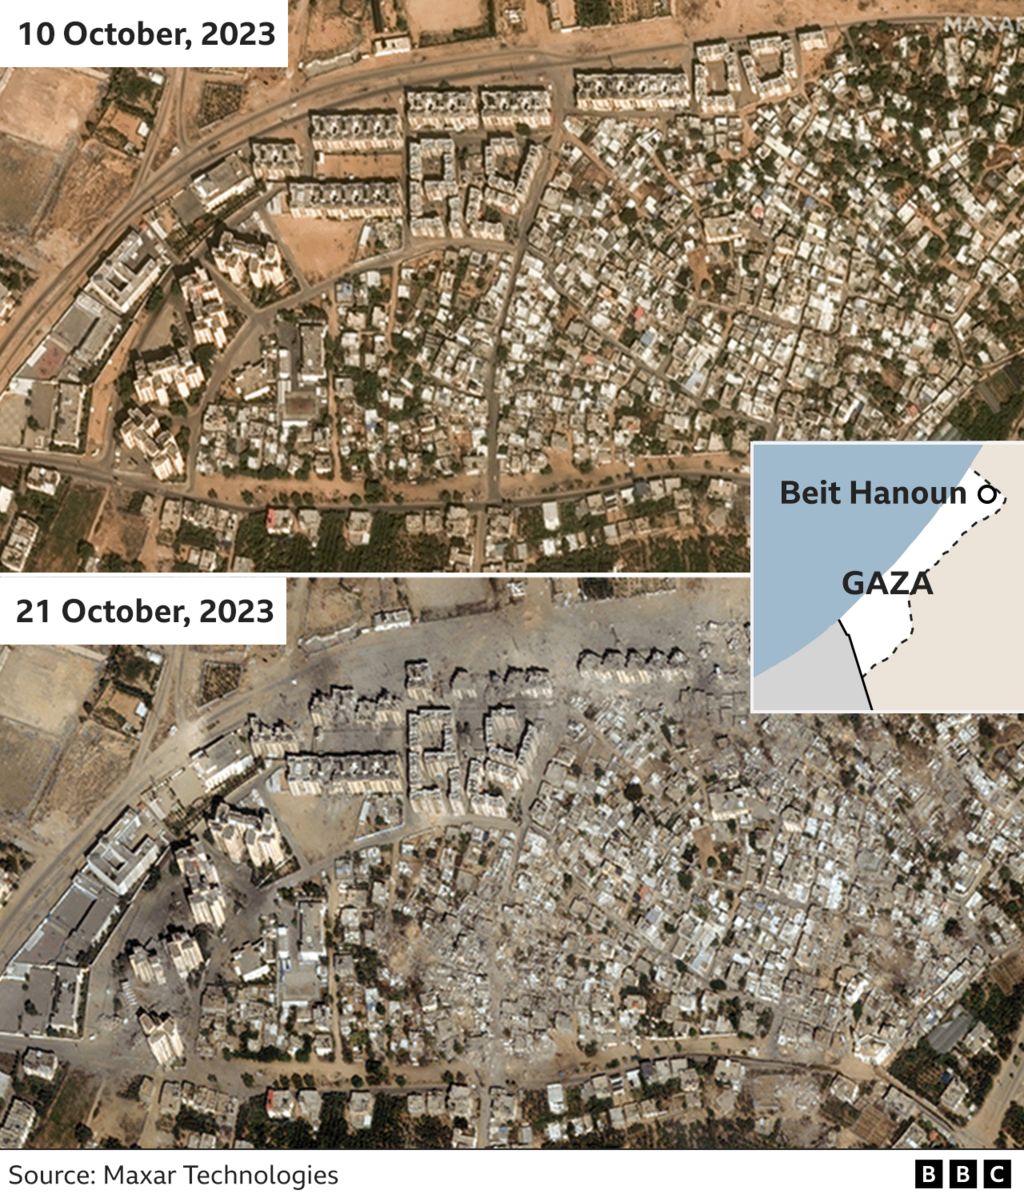 Спутниковые снимки Бейт-Хануна в Газе, показывающие местность до и после воздушных атак Израиля, в результате которых было разрушено несколько зданий